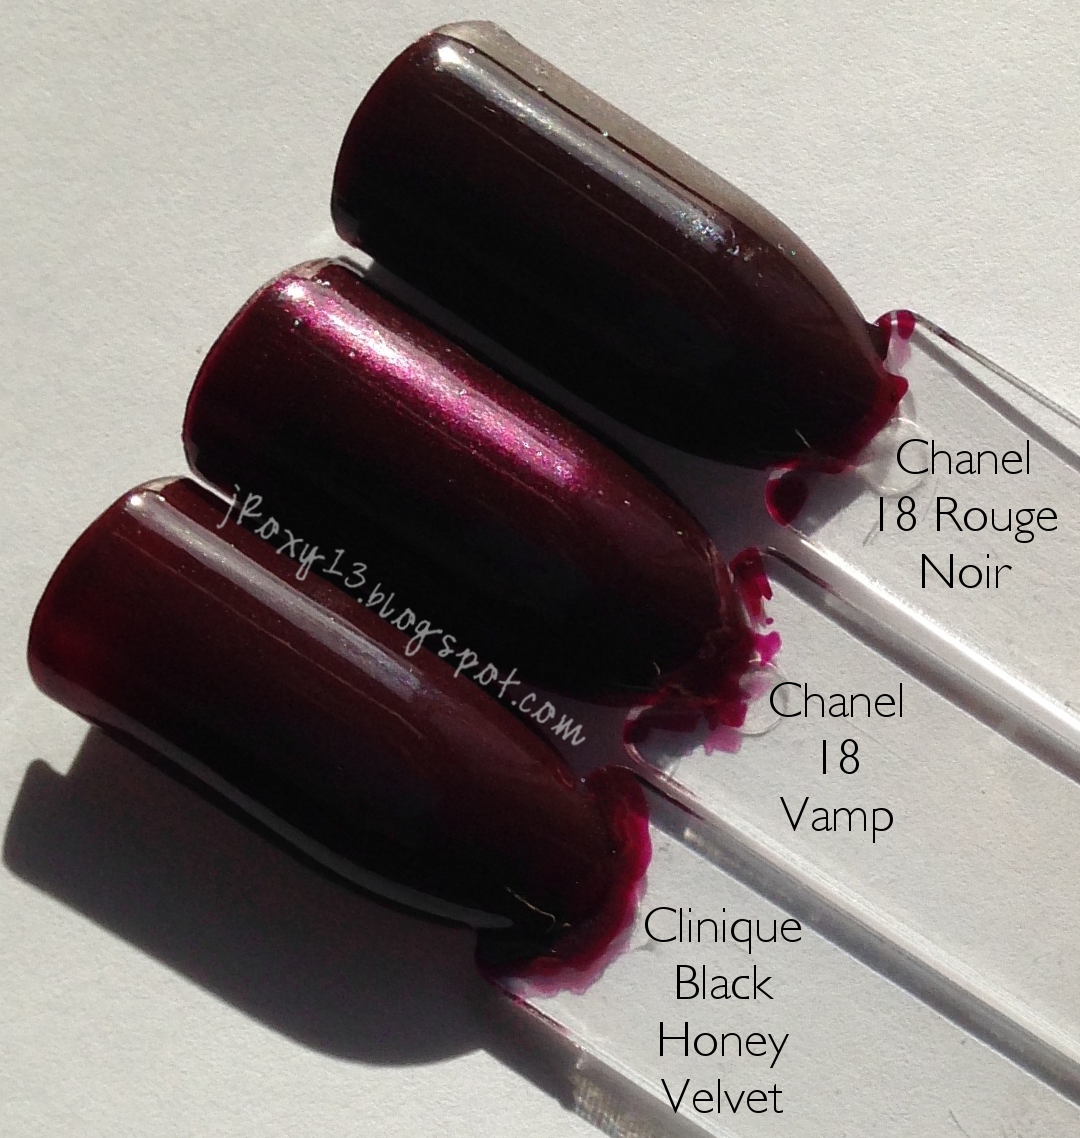 Chanel in #18 Rouge Noir, #18 Vamp, #757 Rose Fusion, and Le Top Coat Lamé  Rouge Noir Swatches + Comparisons